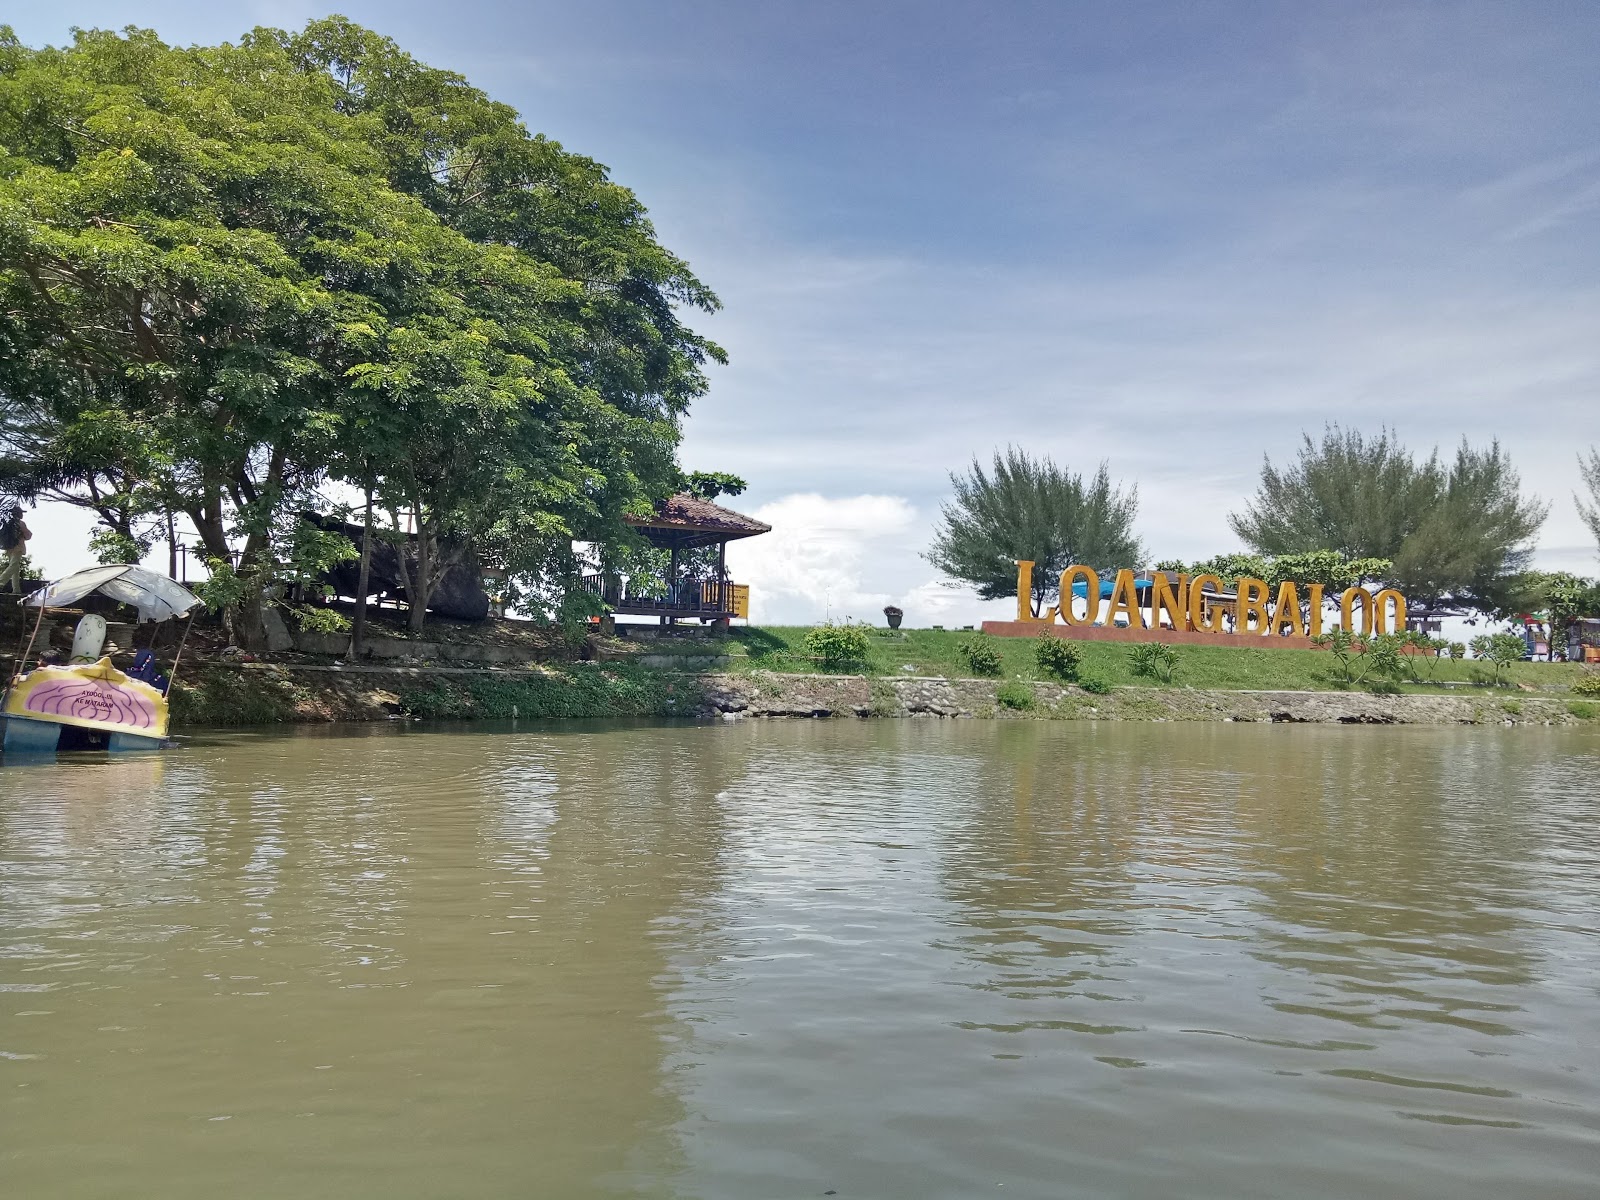 Foto av Loang Baloq Beach med turkos rent vatten yta